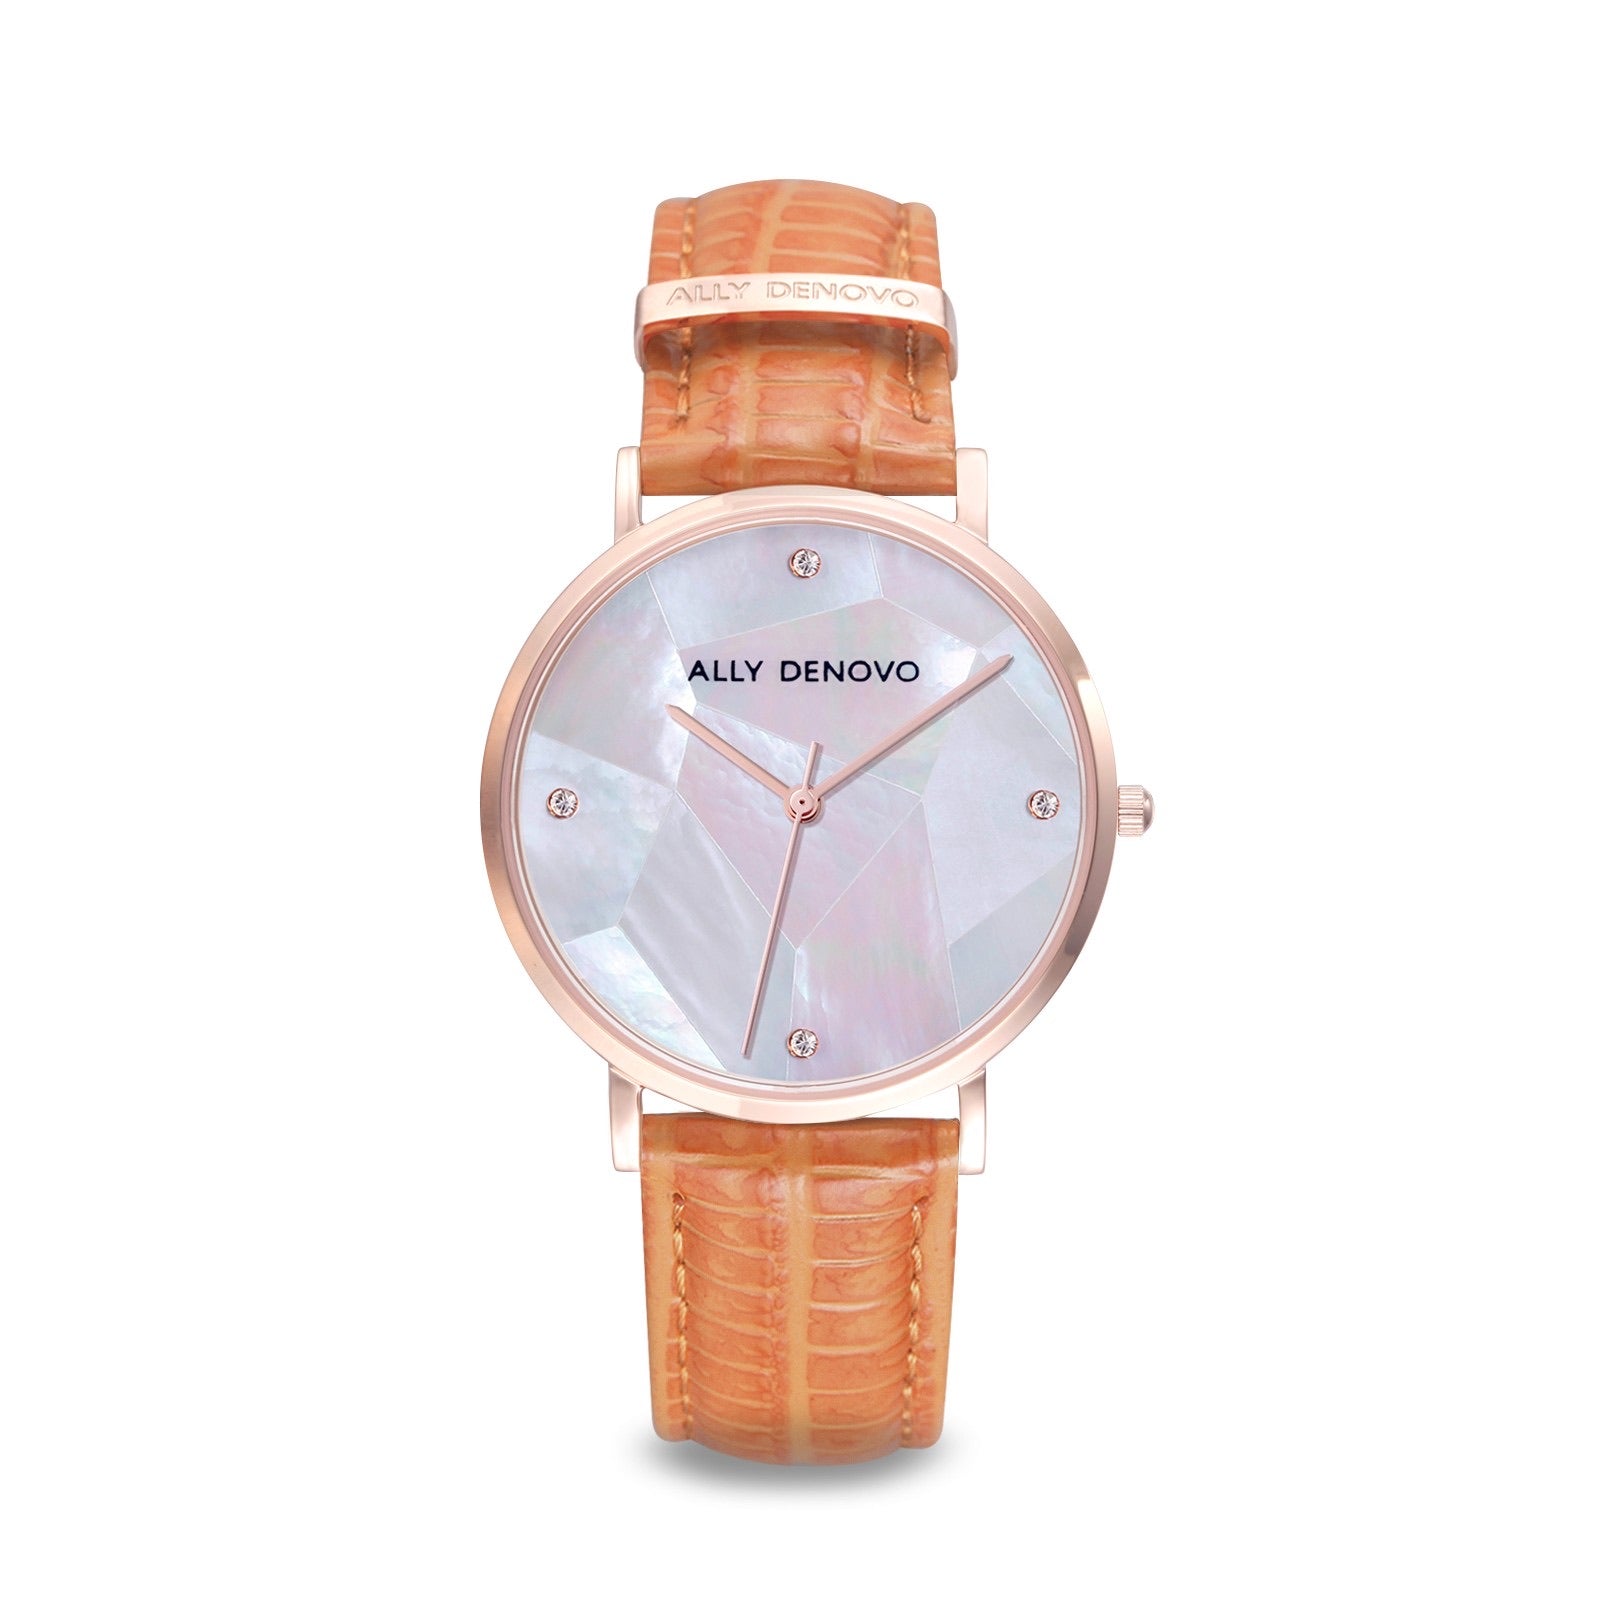 【新上市】Gaia pearl壓蛇紋皮革腕錶-白菱形琉璃玫瑰金框橘色真皮錶帶